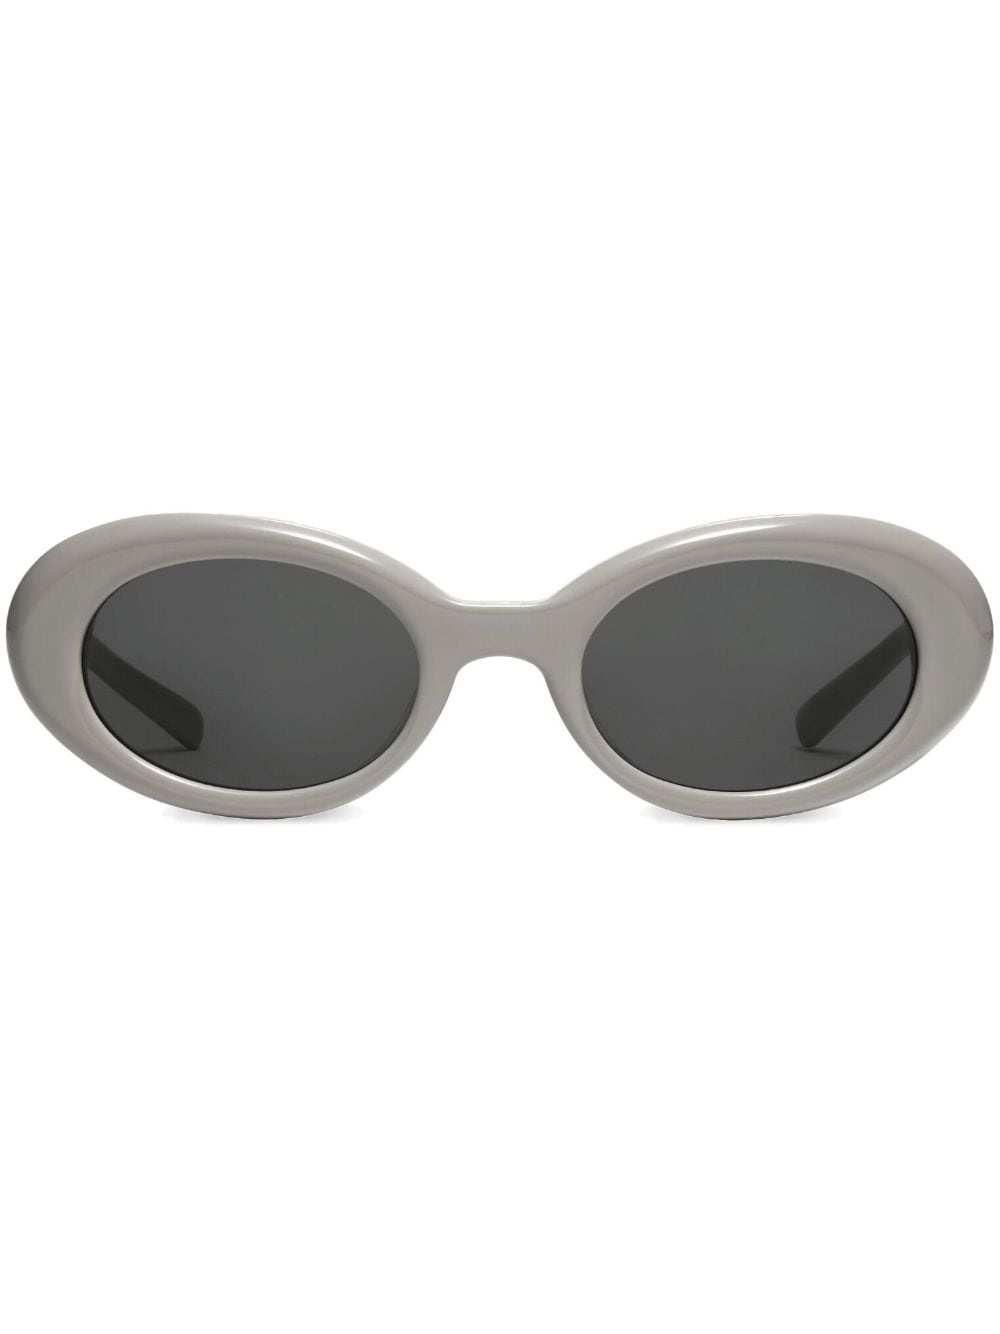 GENTLE MONSTER x Maison Margiela MM005 G10 sunglasses | REVERSIBLE